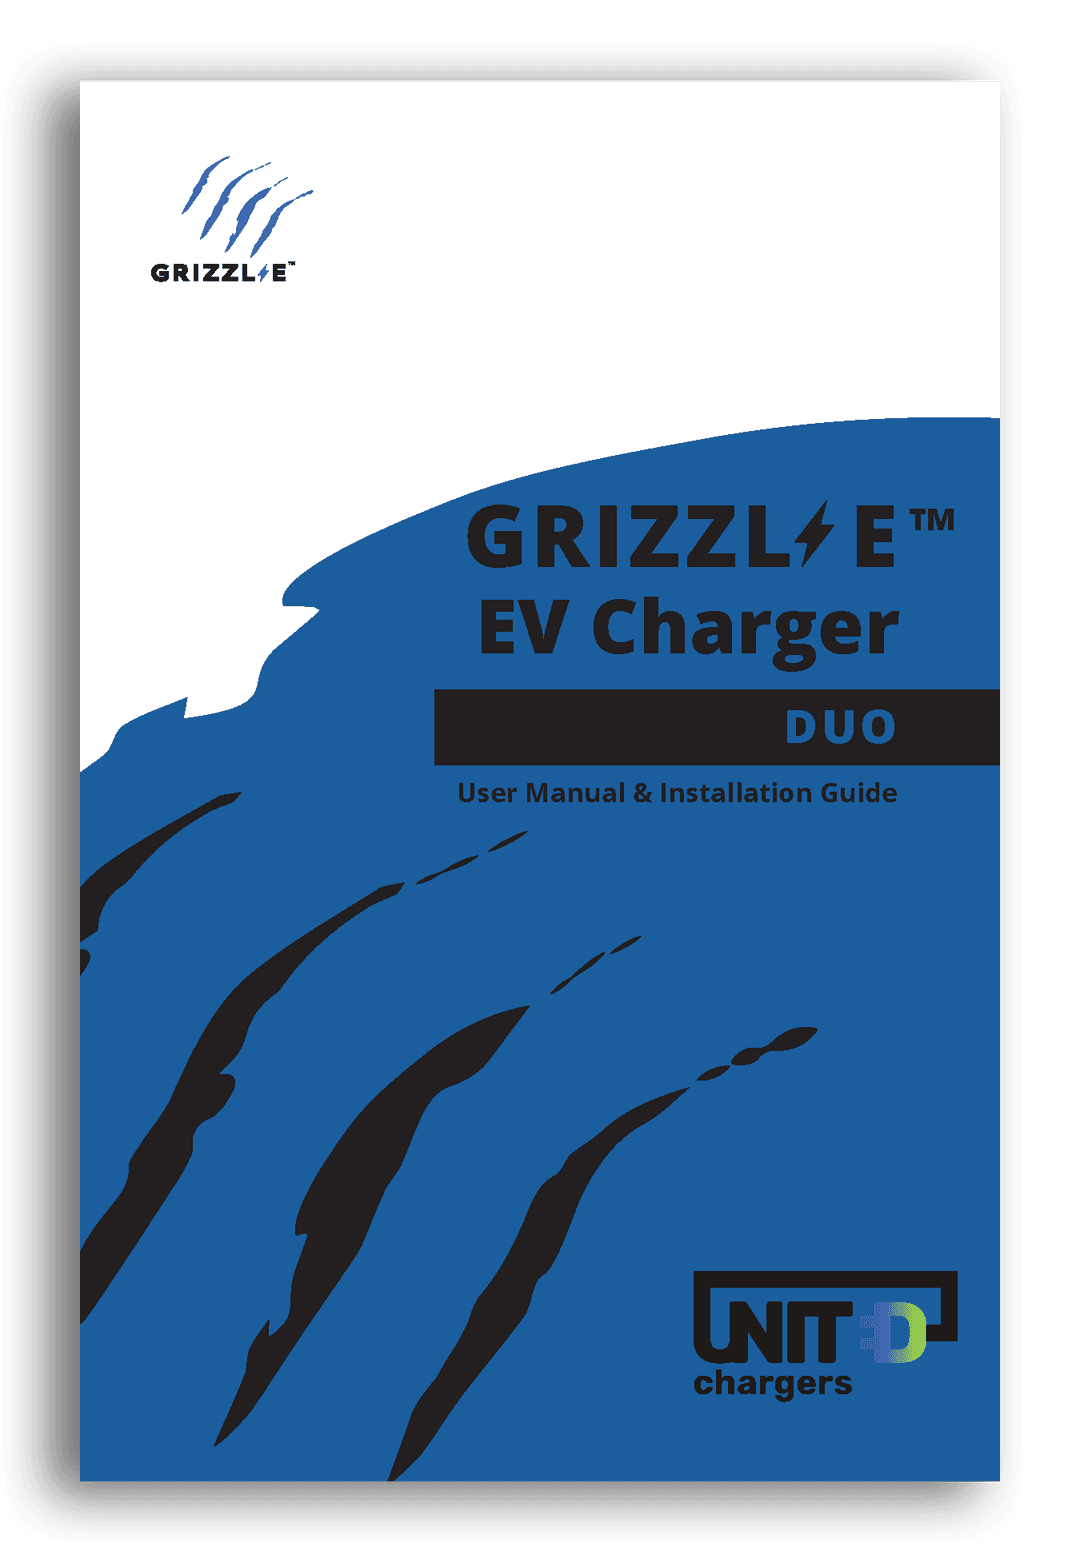 Grizzl-E Duo